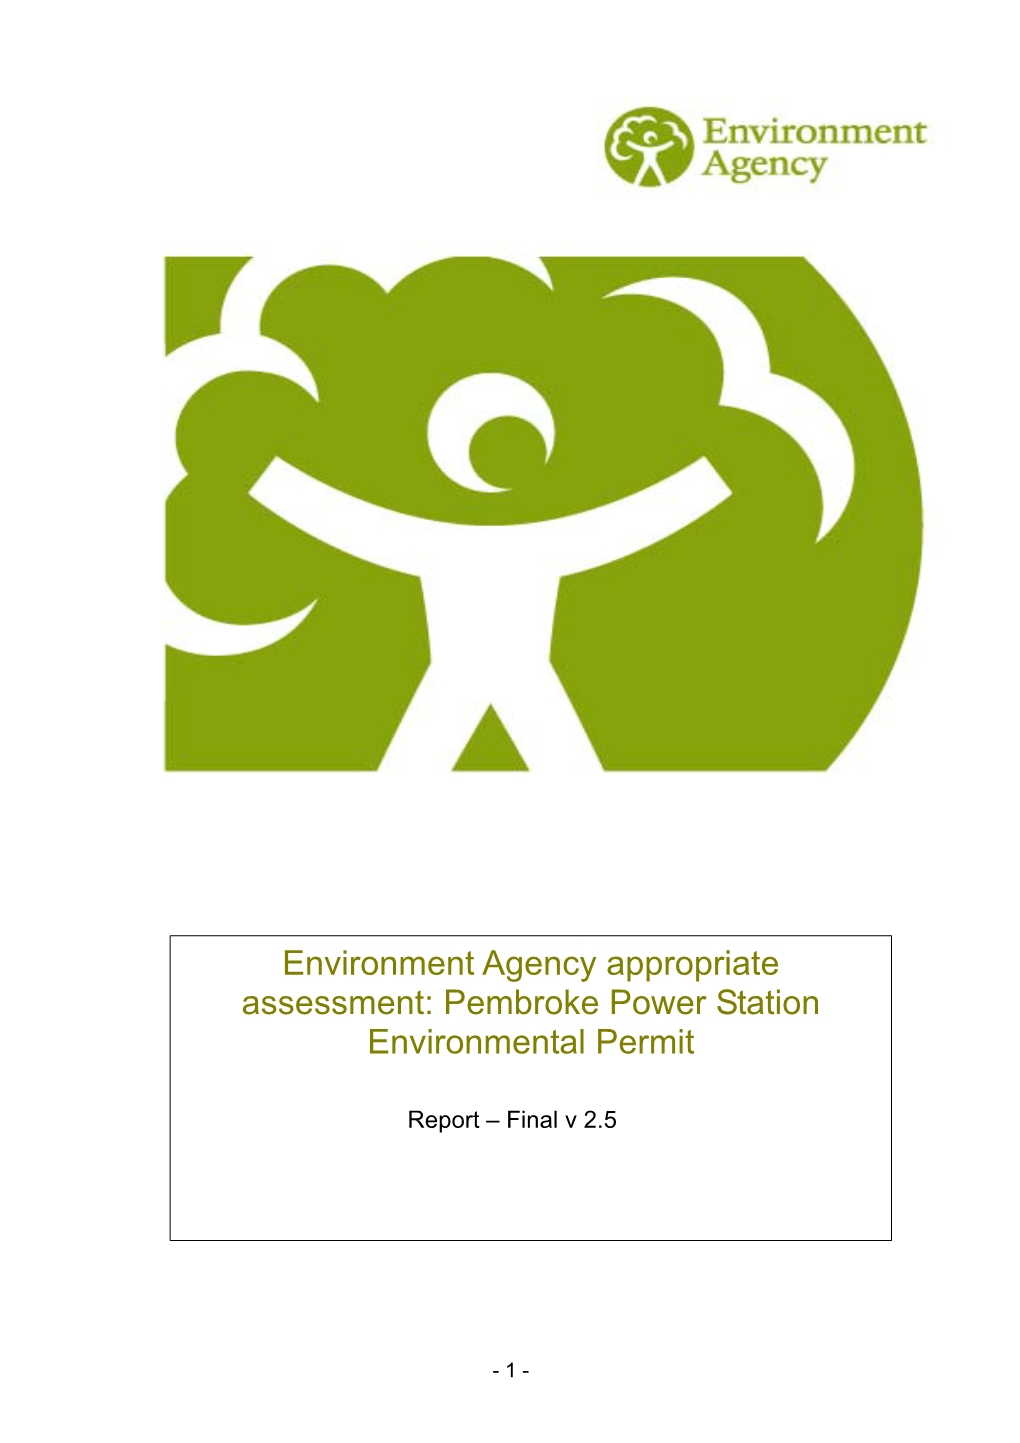 Pembroke Power Station Environmental Permit